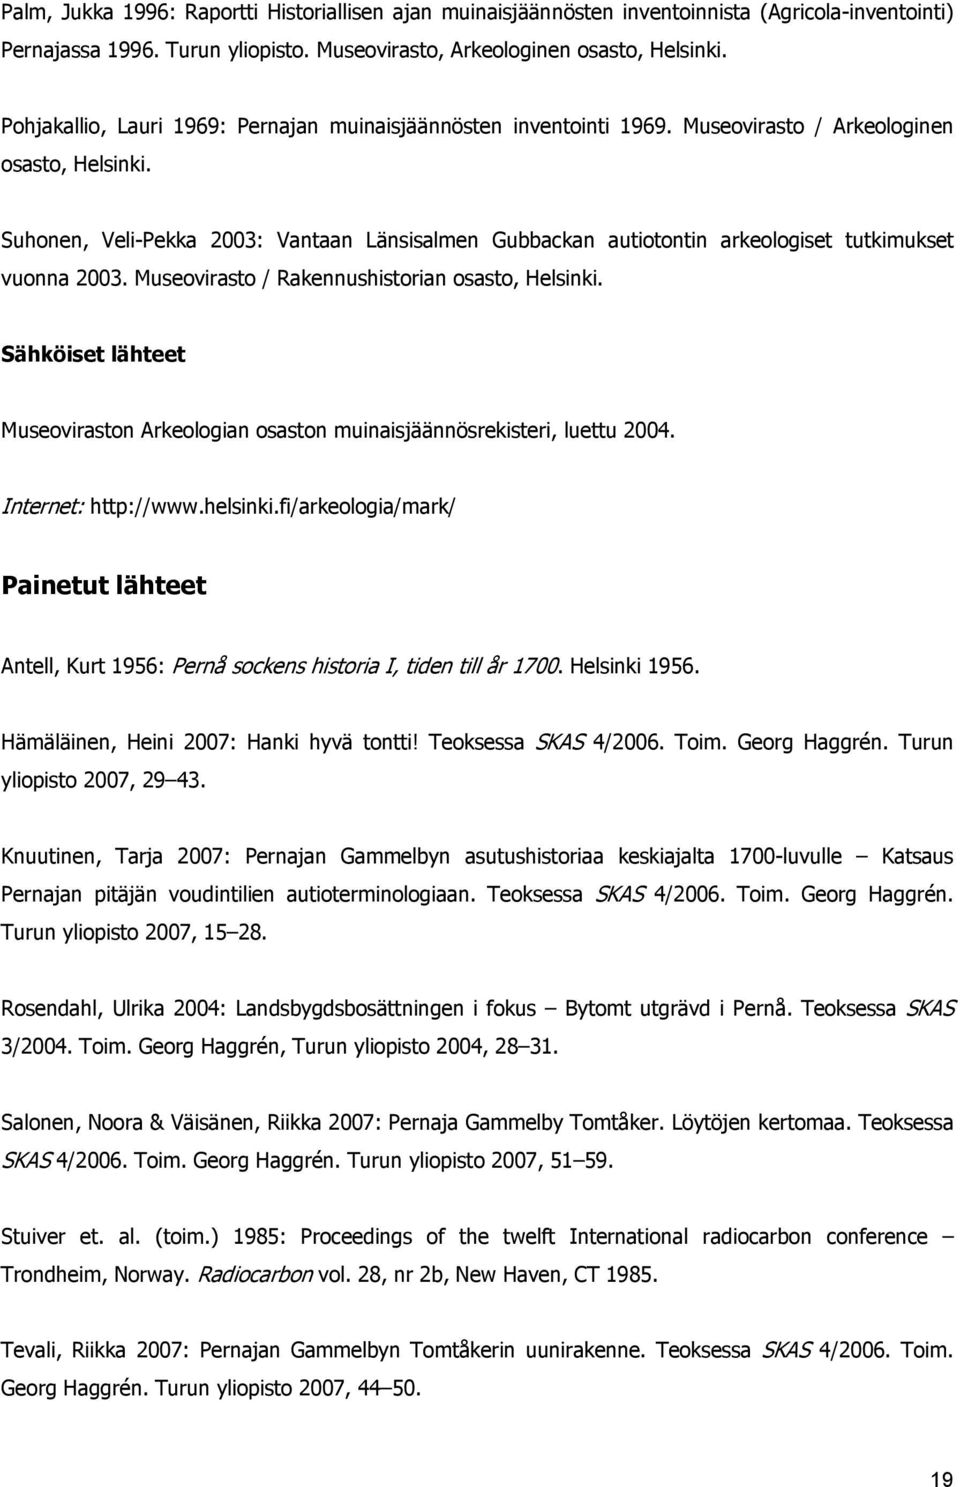 Suhonen, Veli-Pekka 2003: Vantaan Länsisalmen Gubbackan autiotontin arkeologiset tutkimukset vuonna 2003. Museovirasto / Rakennushistorian osasto, Helsinki.